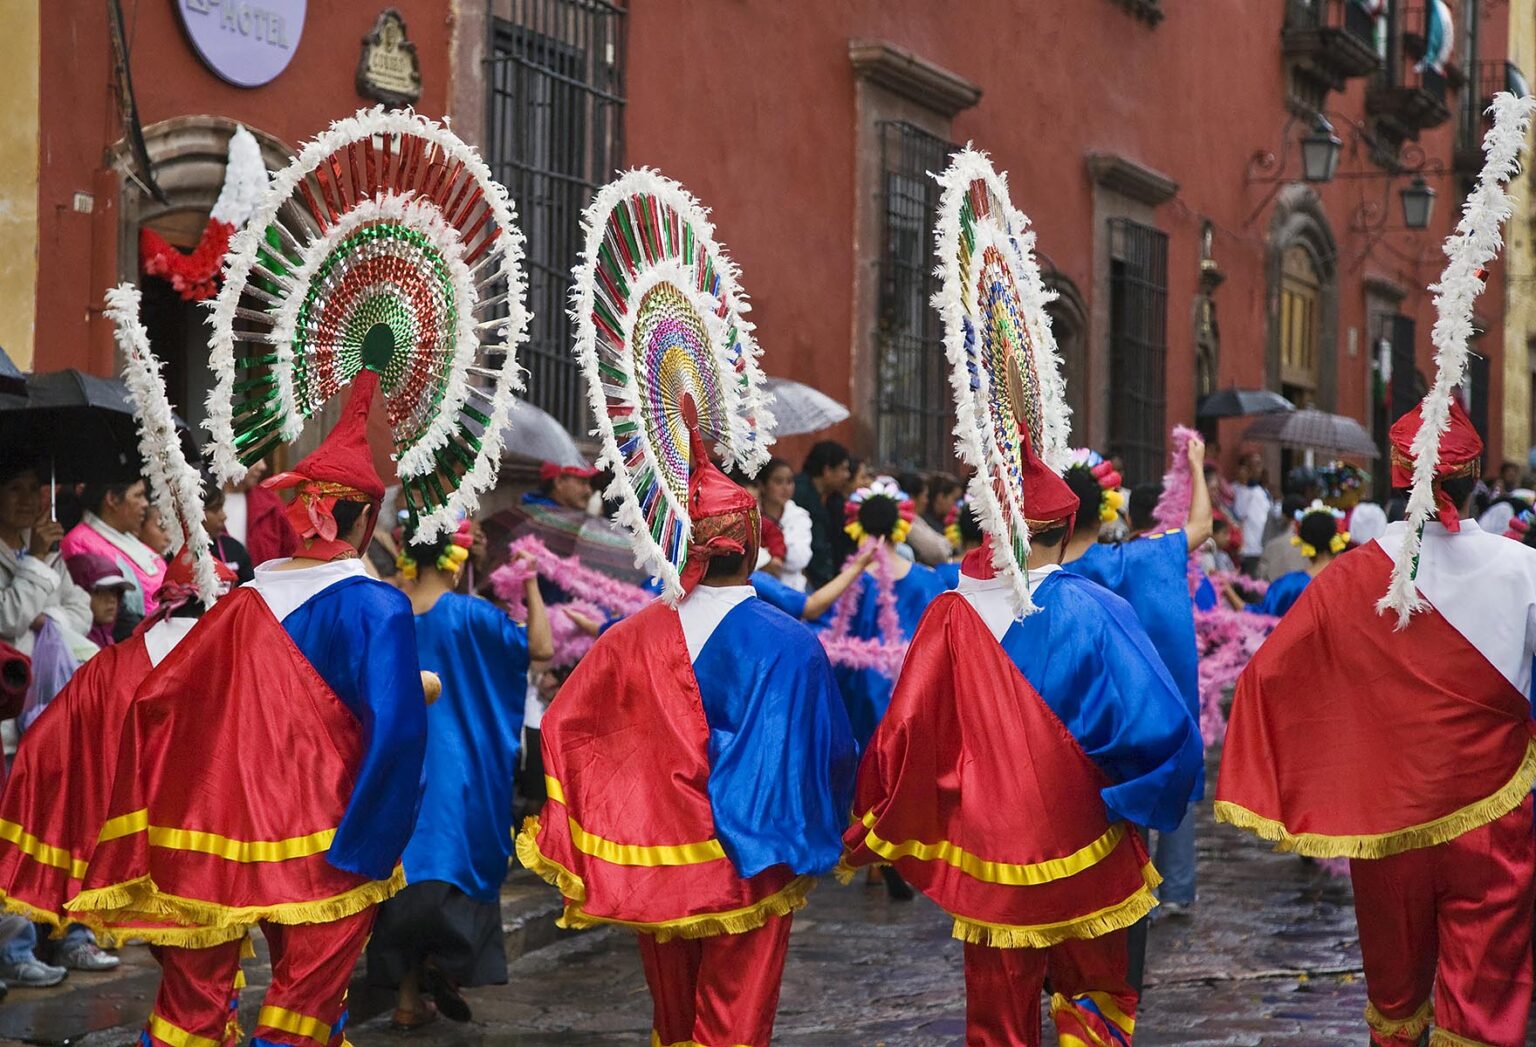 MEXICANS in traditional COSTUMES participate in the FESTIVAL DE SAN MIGUEL ARCHANGEL PARADE - SAN MIGUEL DE ALLENDE, MEXICO